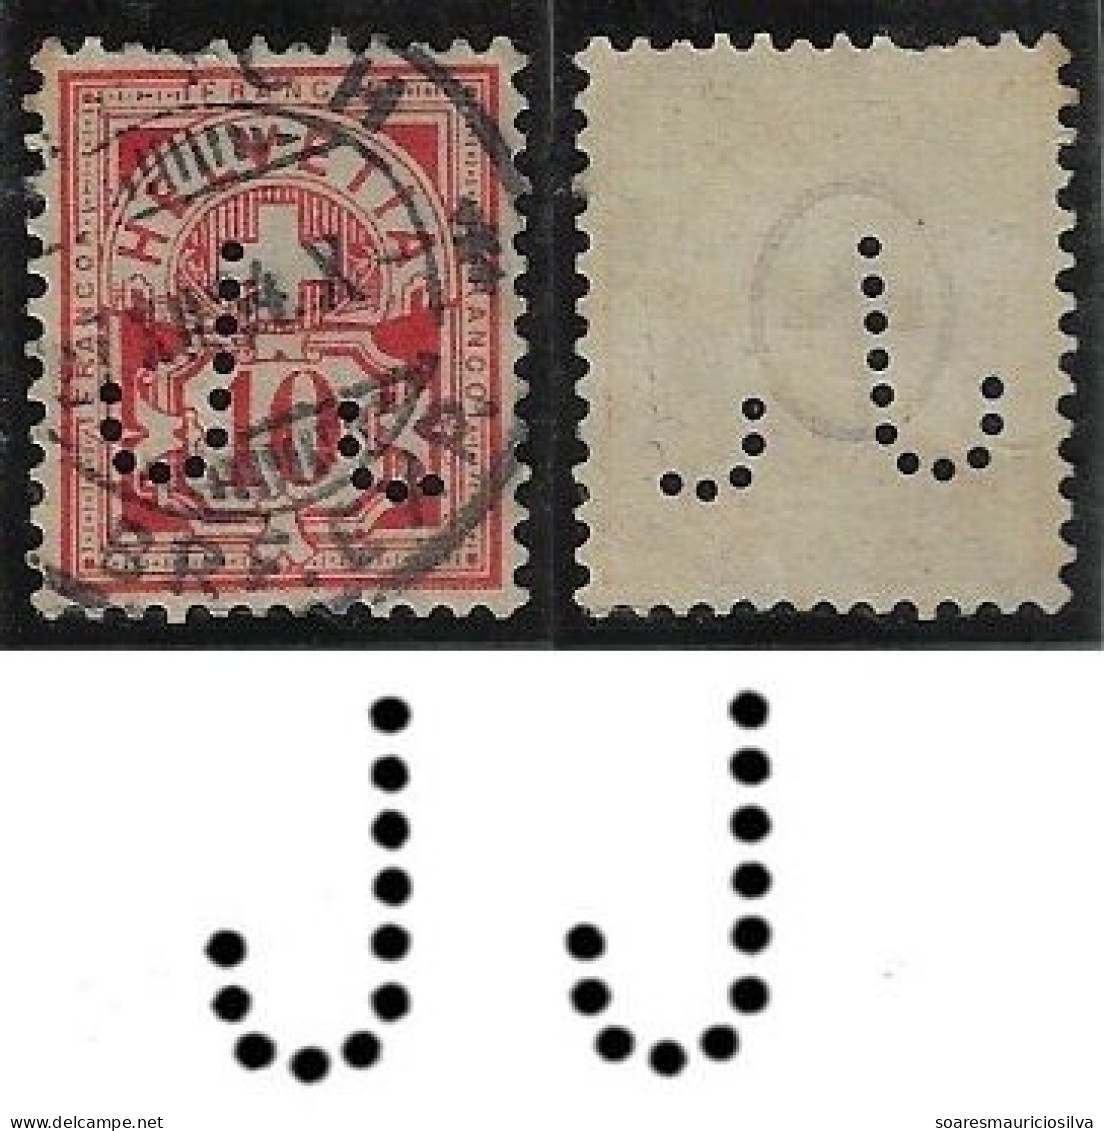 Switzerland 1901/1922 Stamp With Perfin JJ By J. Jäggli Centralhof Zurich Lochung Perfore - Perfins